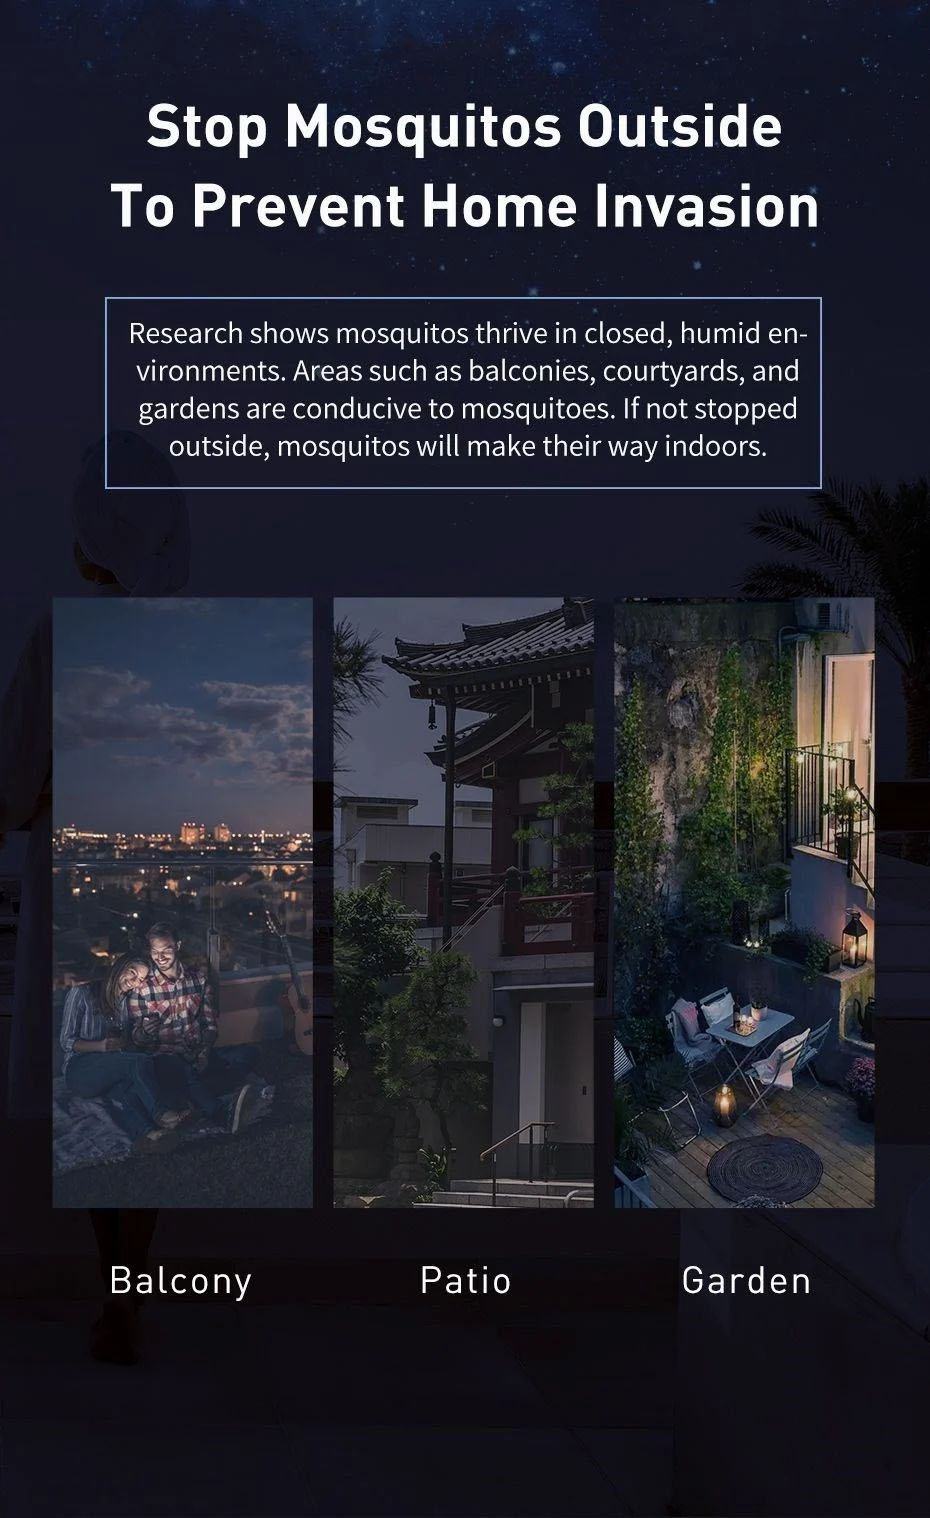 Đèn Bắt Muồi Và Côn Trùng Baseus Pavilion Courtyard Mosquito Killer ( 365mm, IPX4, UV Light Mosquito Killer Lamp )